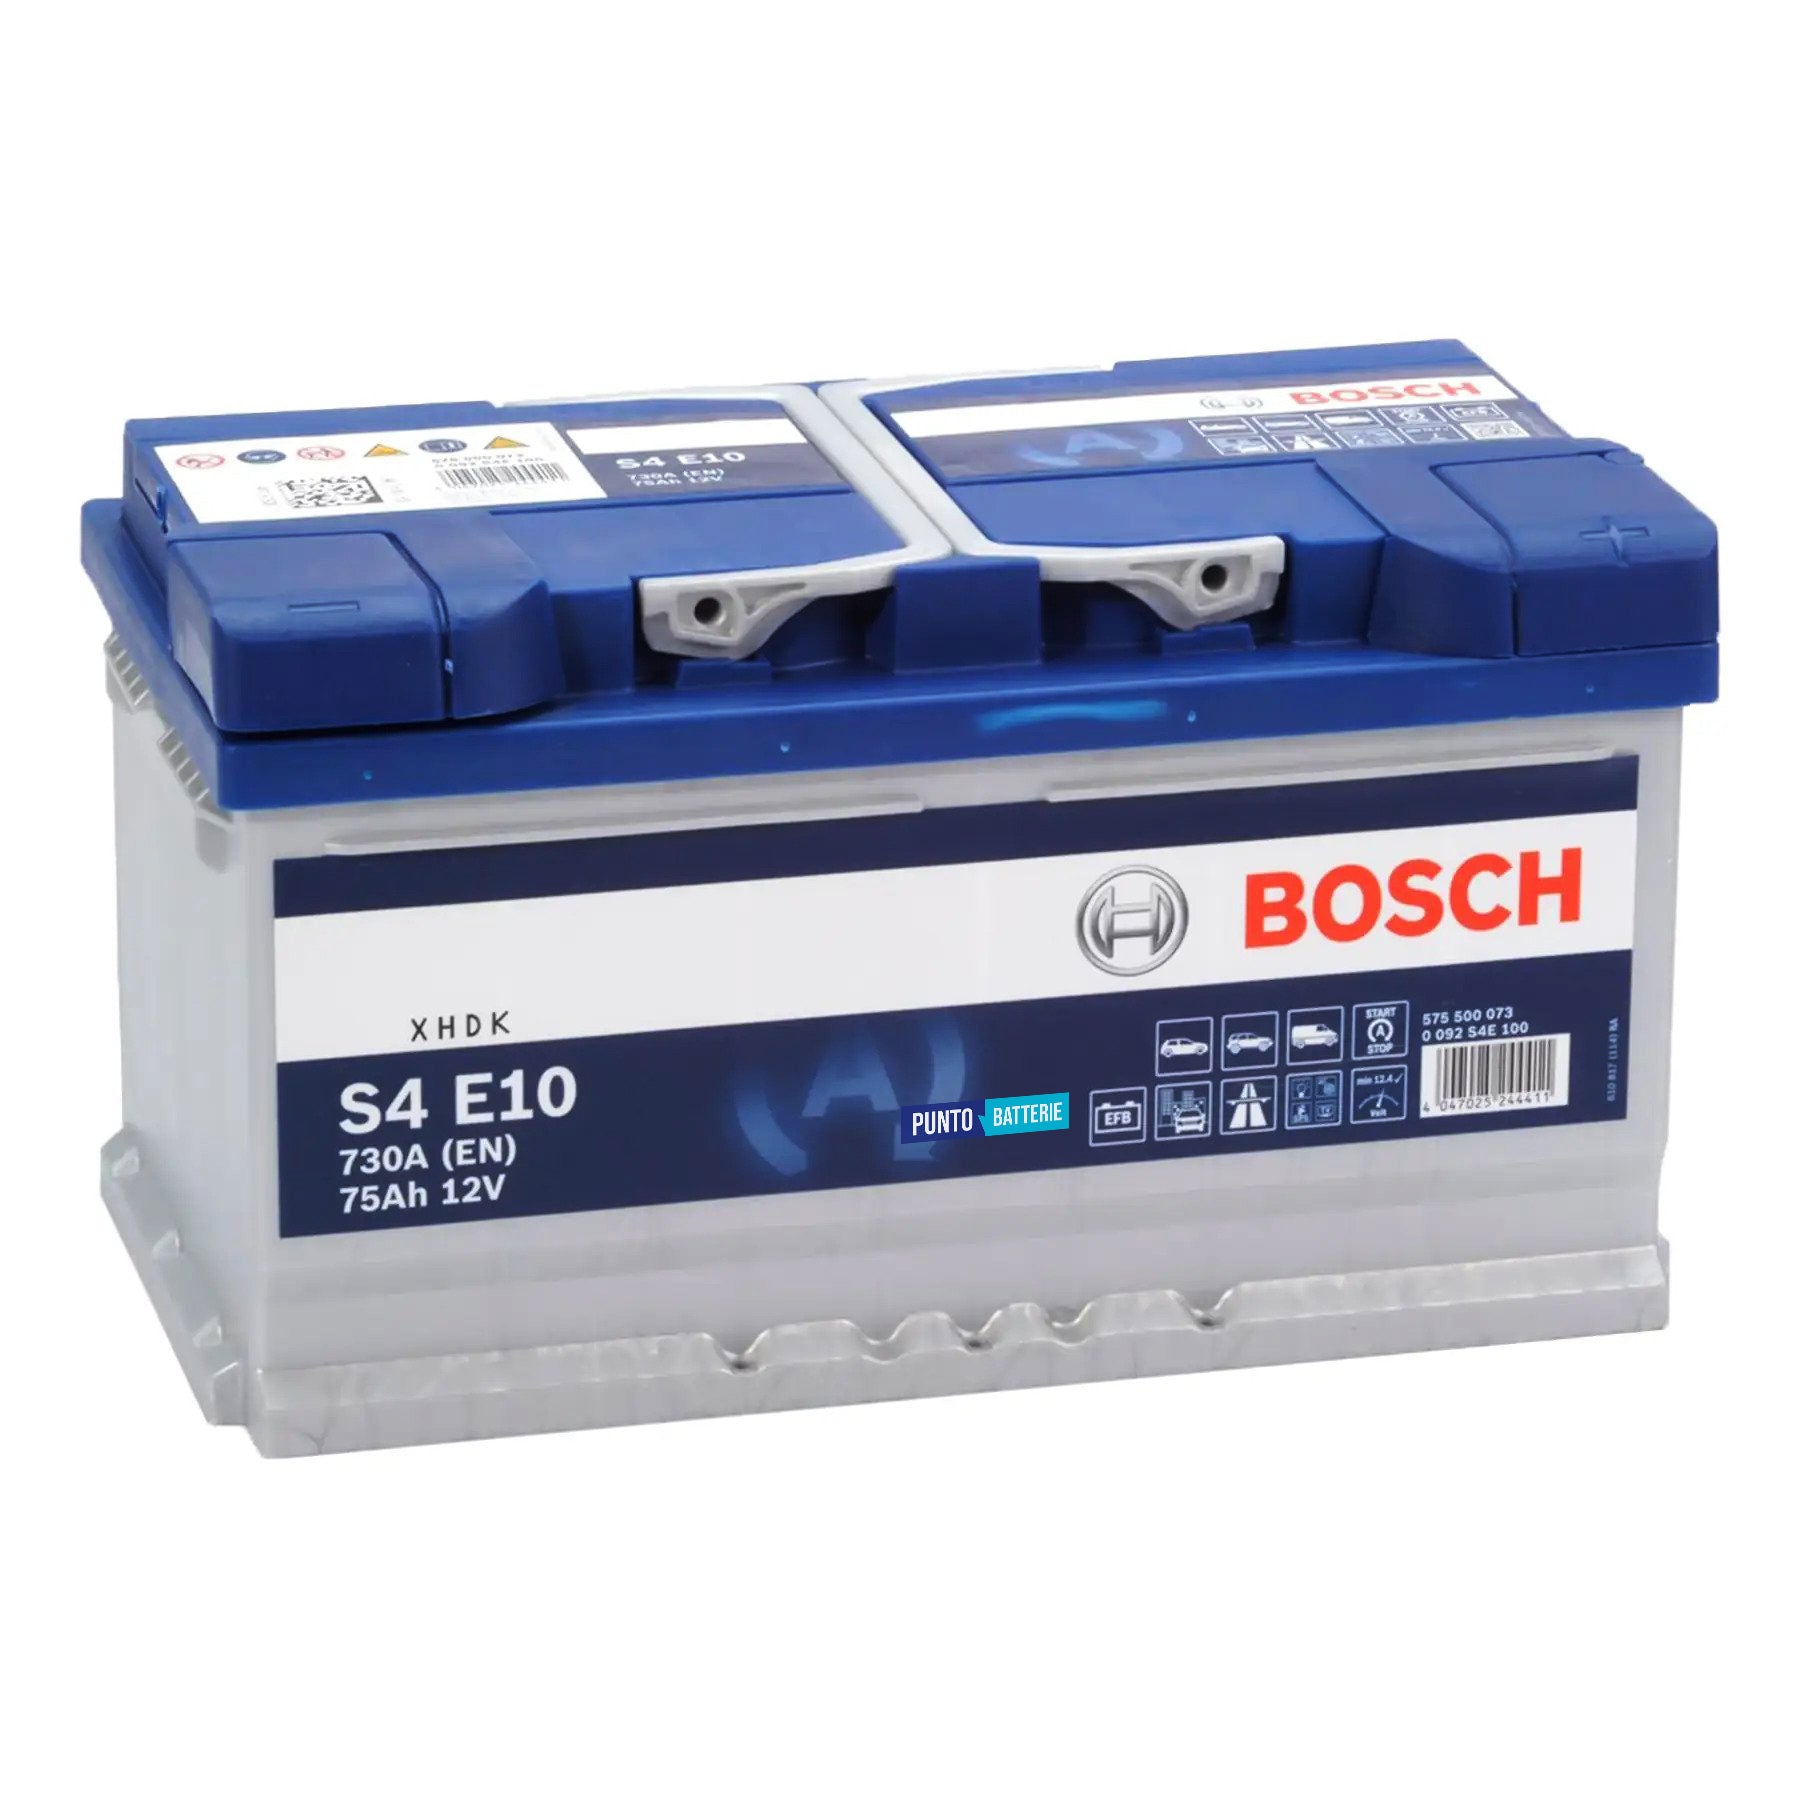 Batteria originale Bosch S4E S4 E10, dimensioni 315 x 175 x 175, polo positivo a destra, 12 volt, 75 amperora, 800 ampere, EFB. Batteria per auto e veicoli leggeri con start e stop.